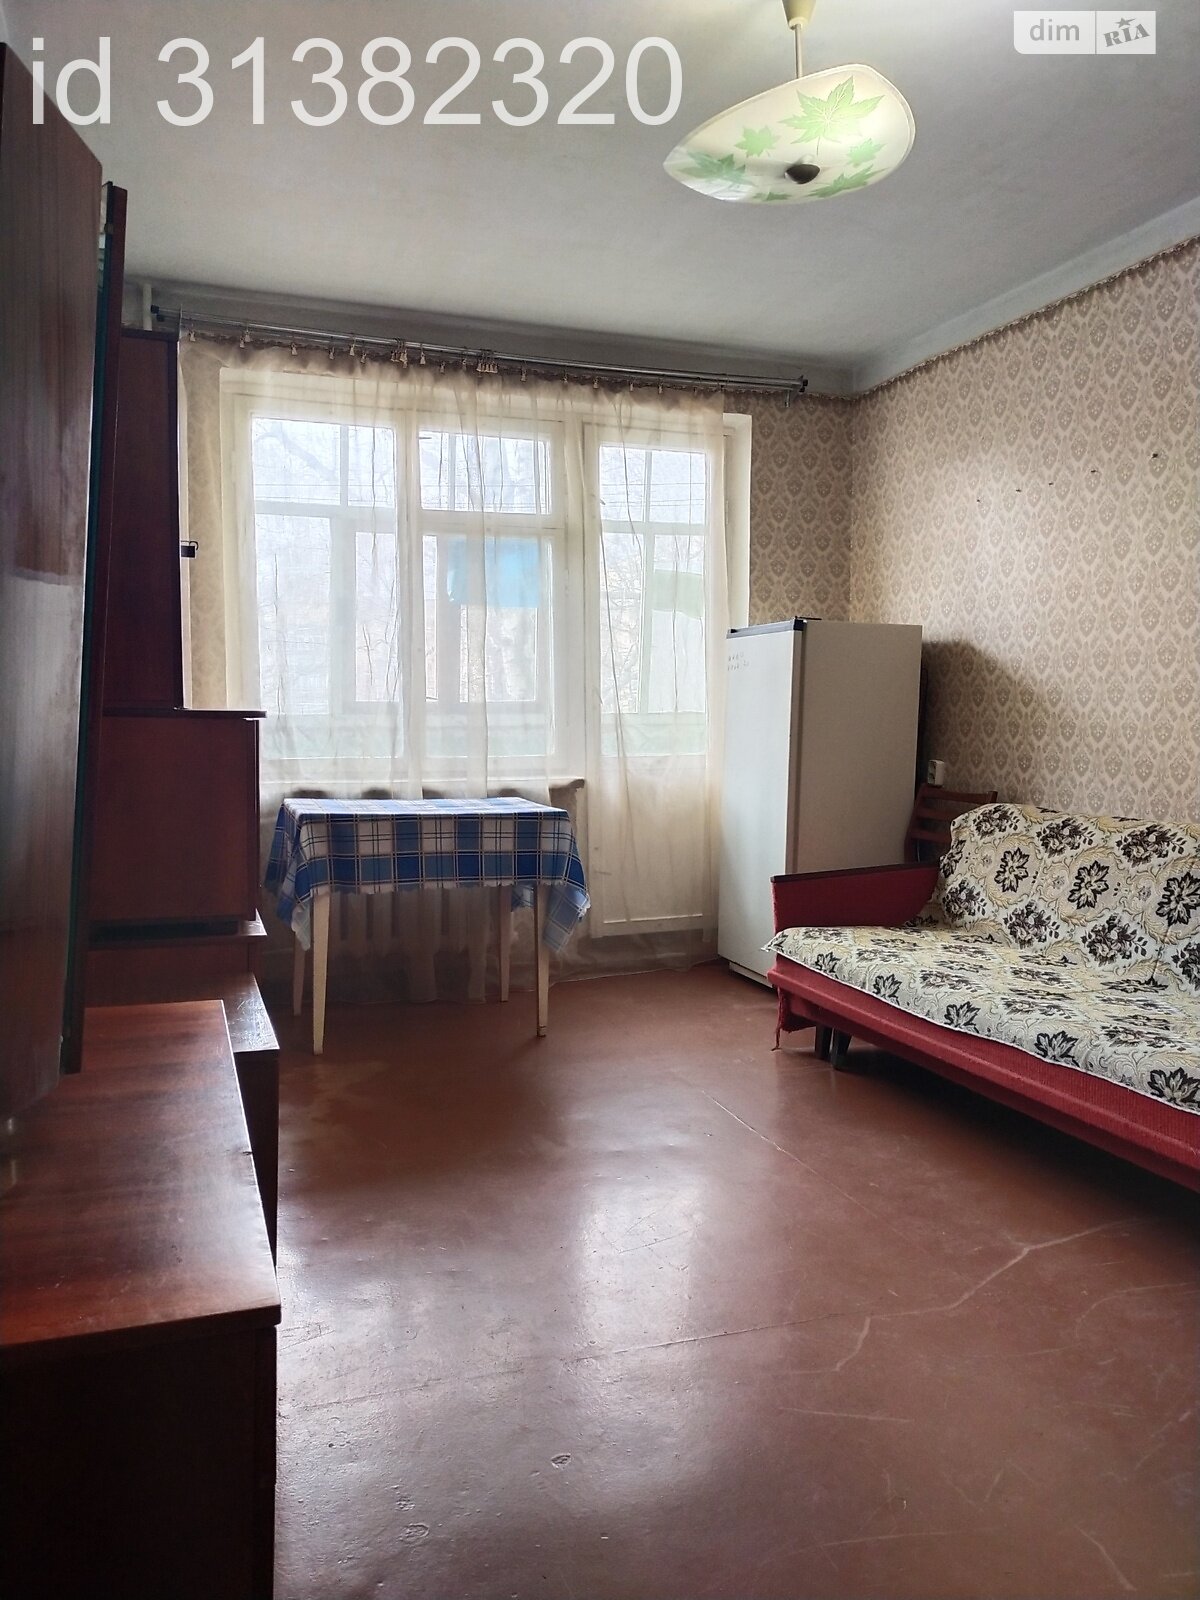 Комната в Полтаве, на ул. Половка в районе Половки на продажу фото 1